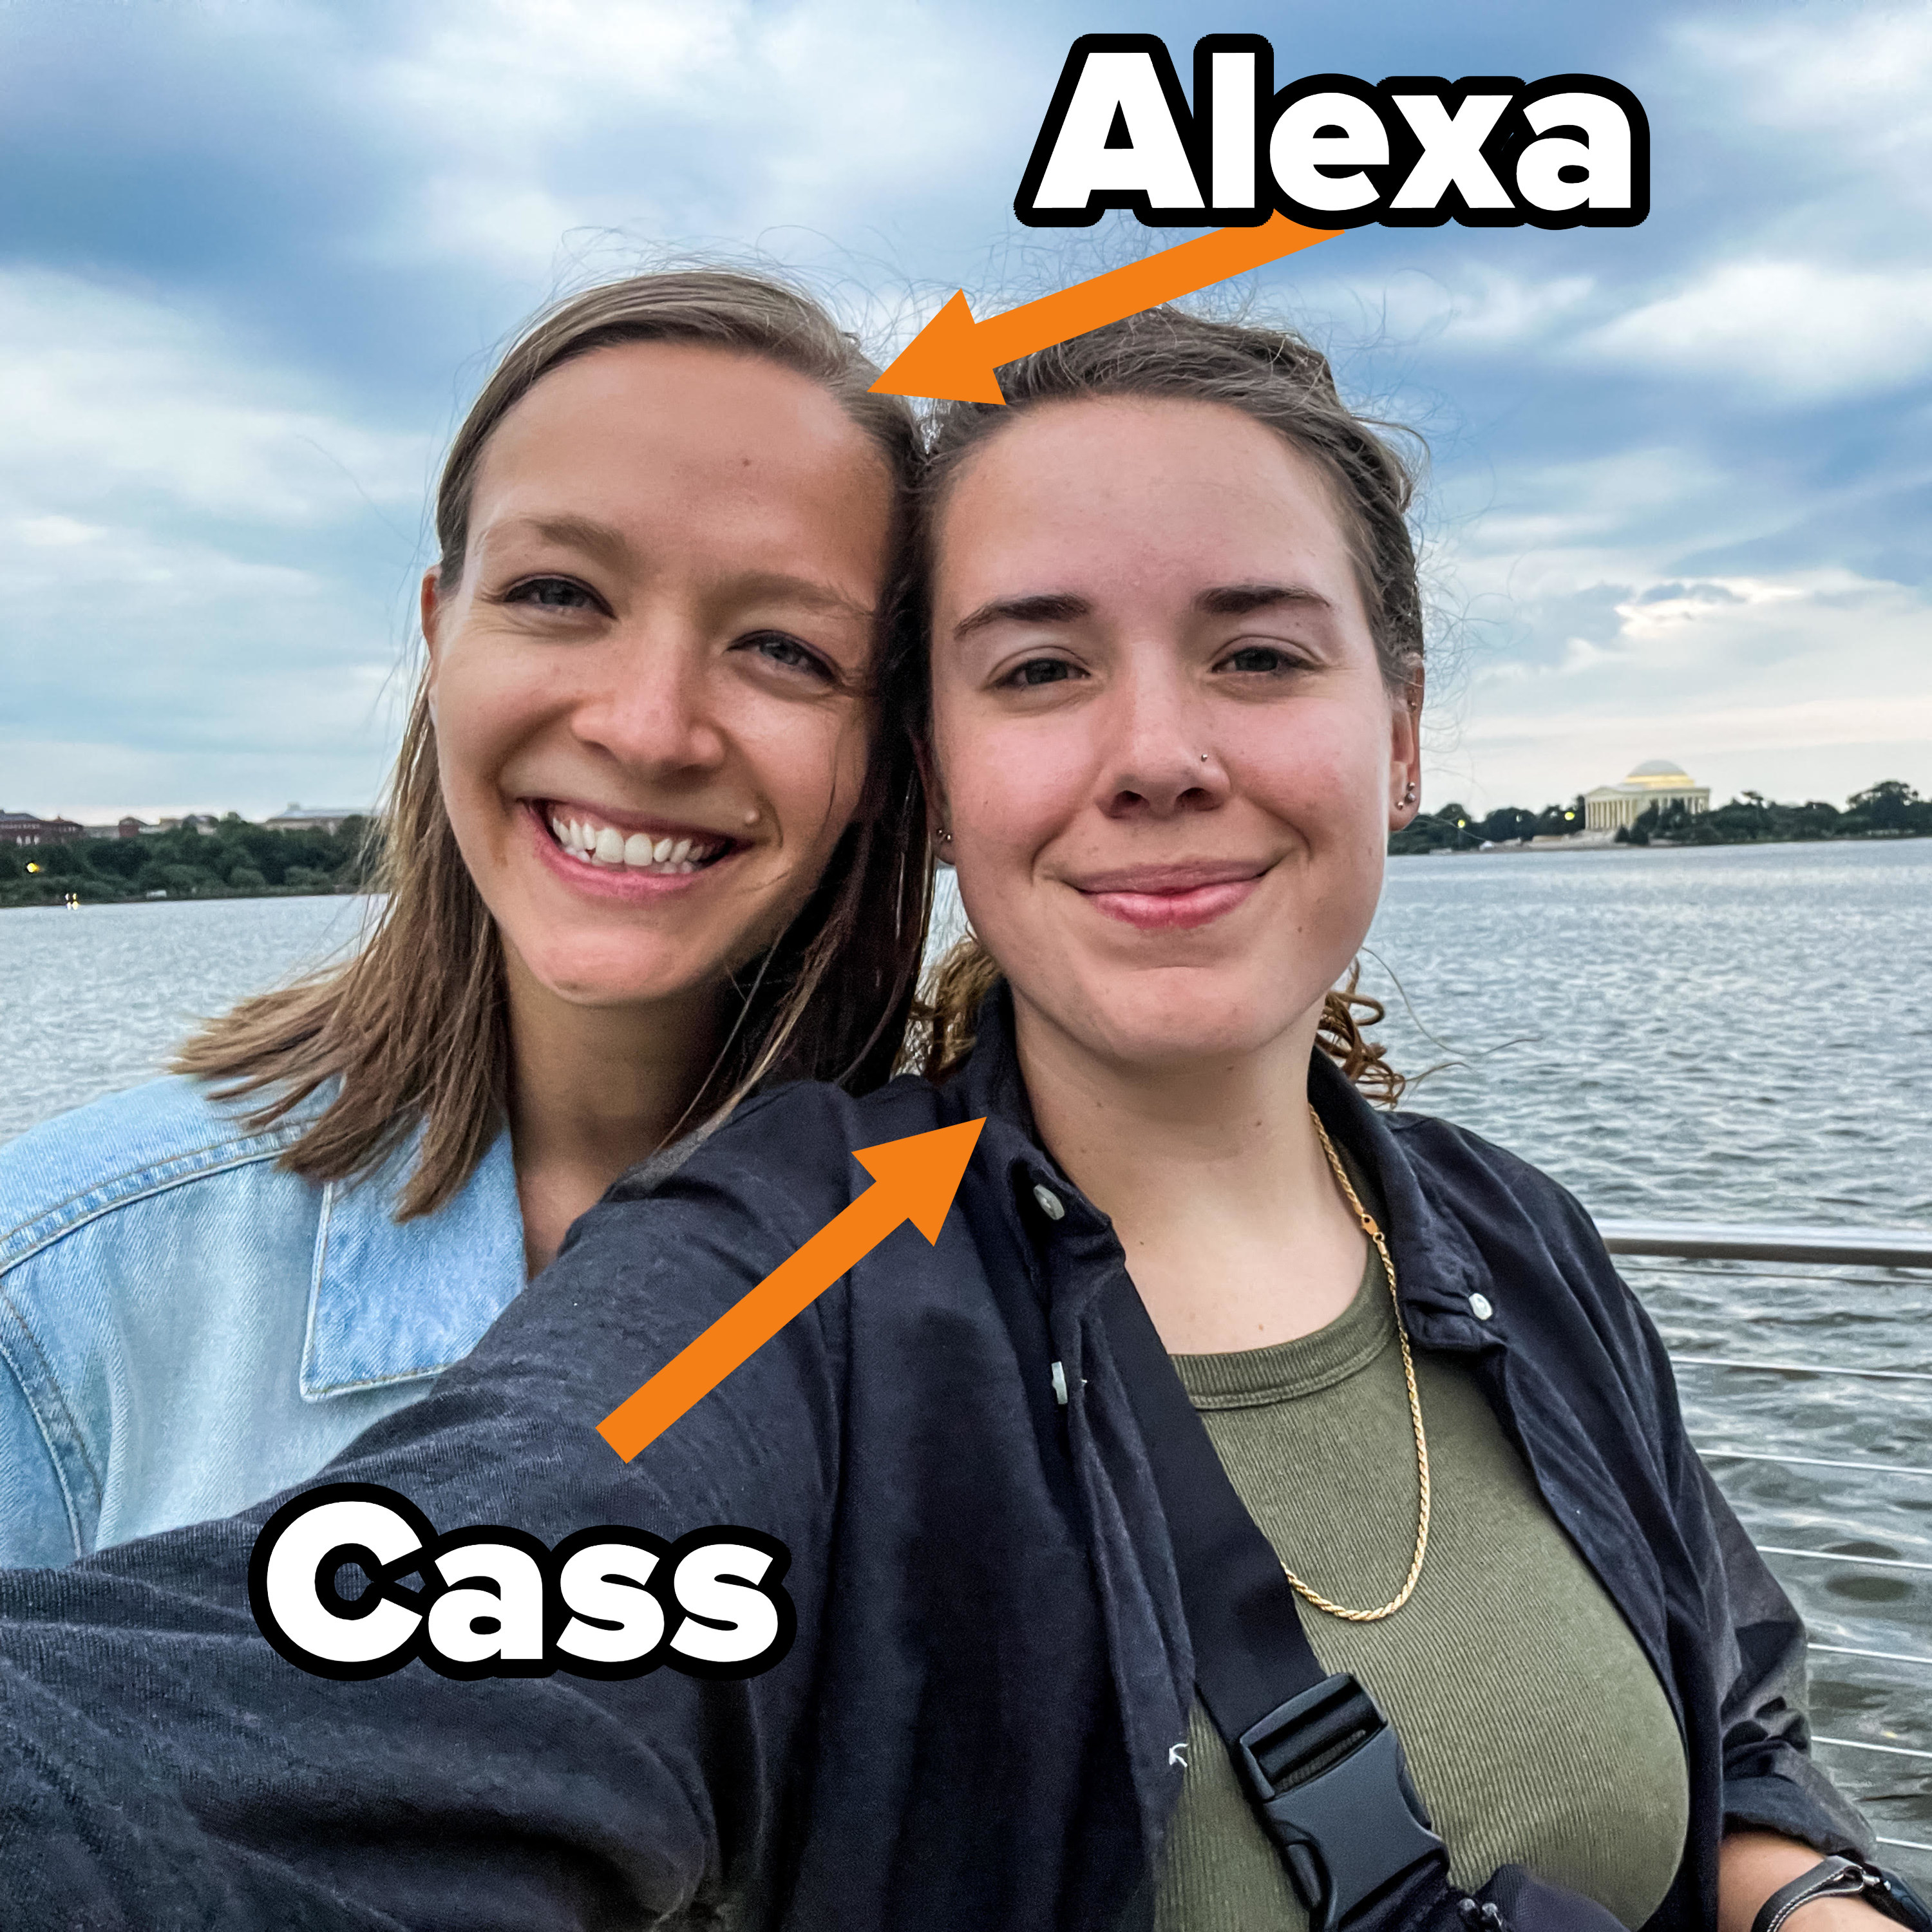 Cass and Alexa of Twofemmegems taking a selfie